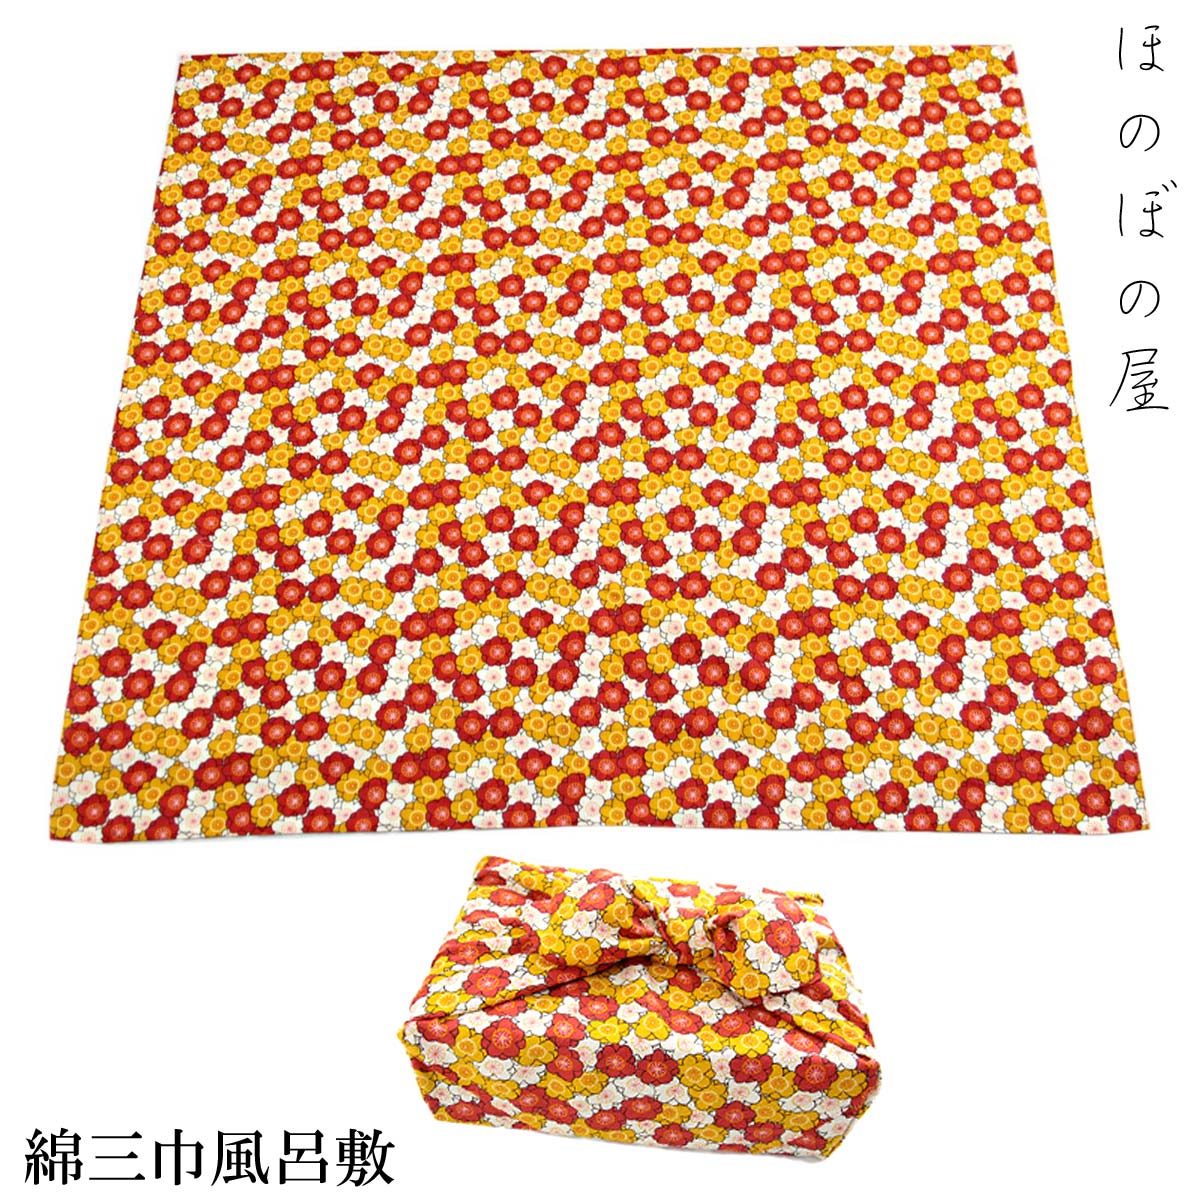 風呂敷 三巾 109cm 梅 黄色 四方縫い 